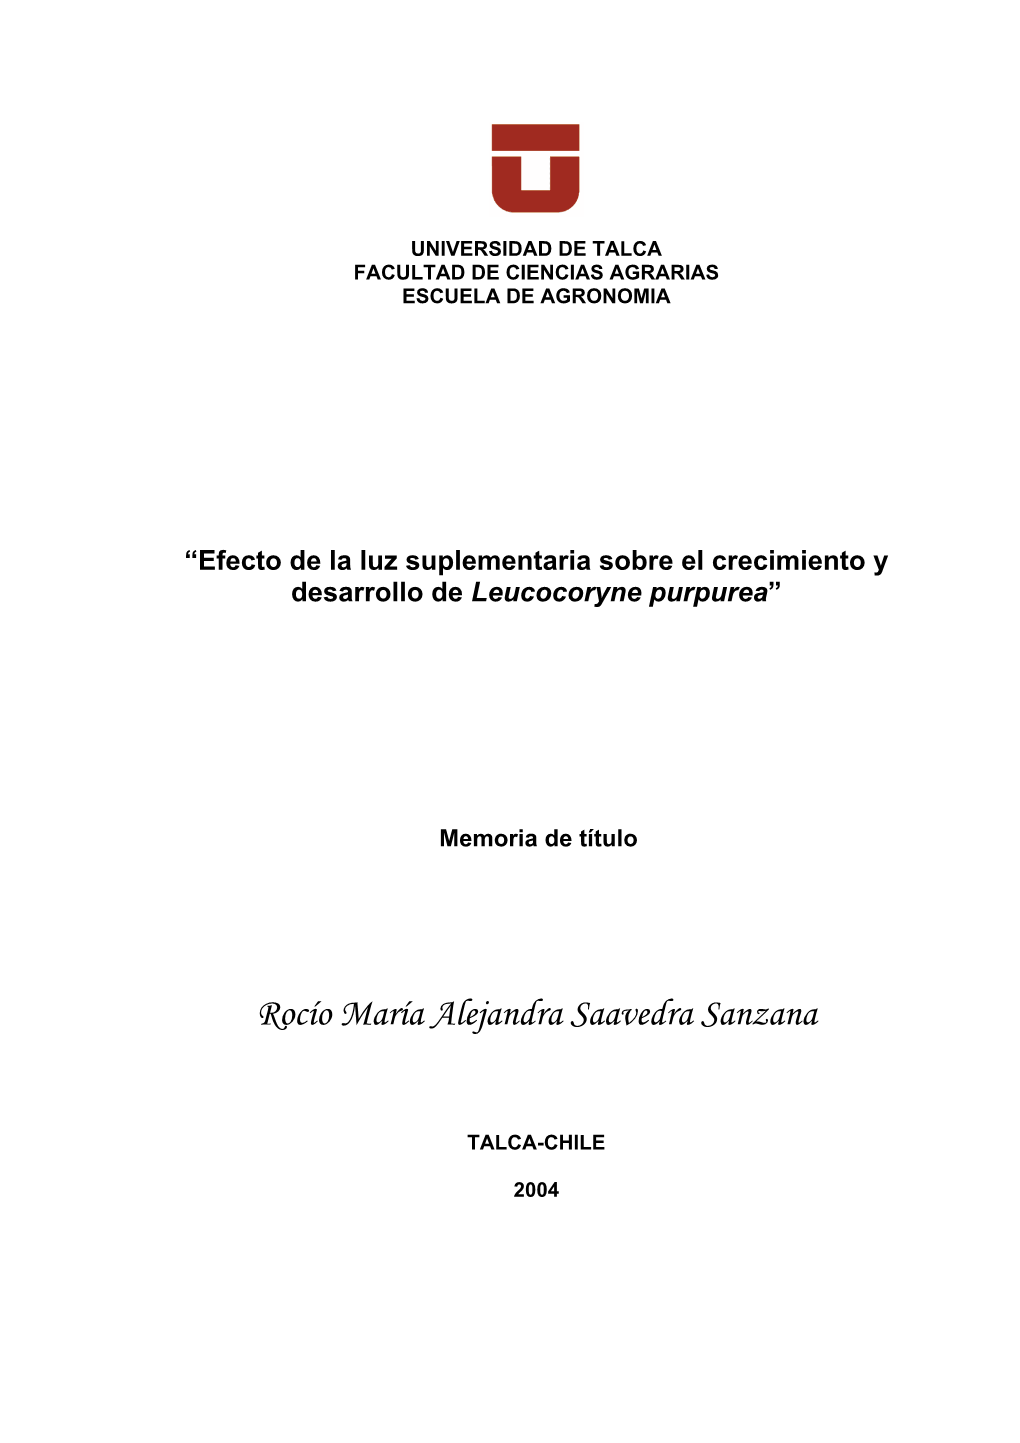 Rocío María Alejandra Saavedra Sanzana